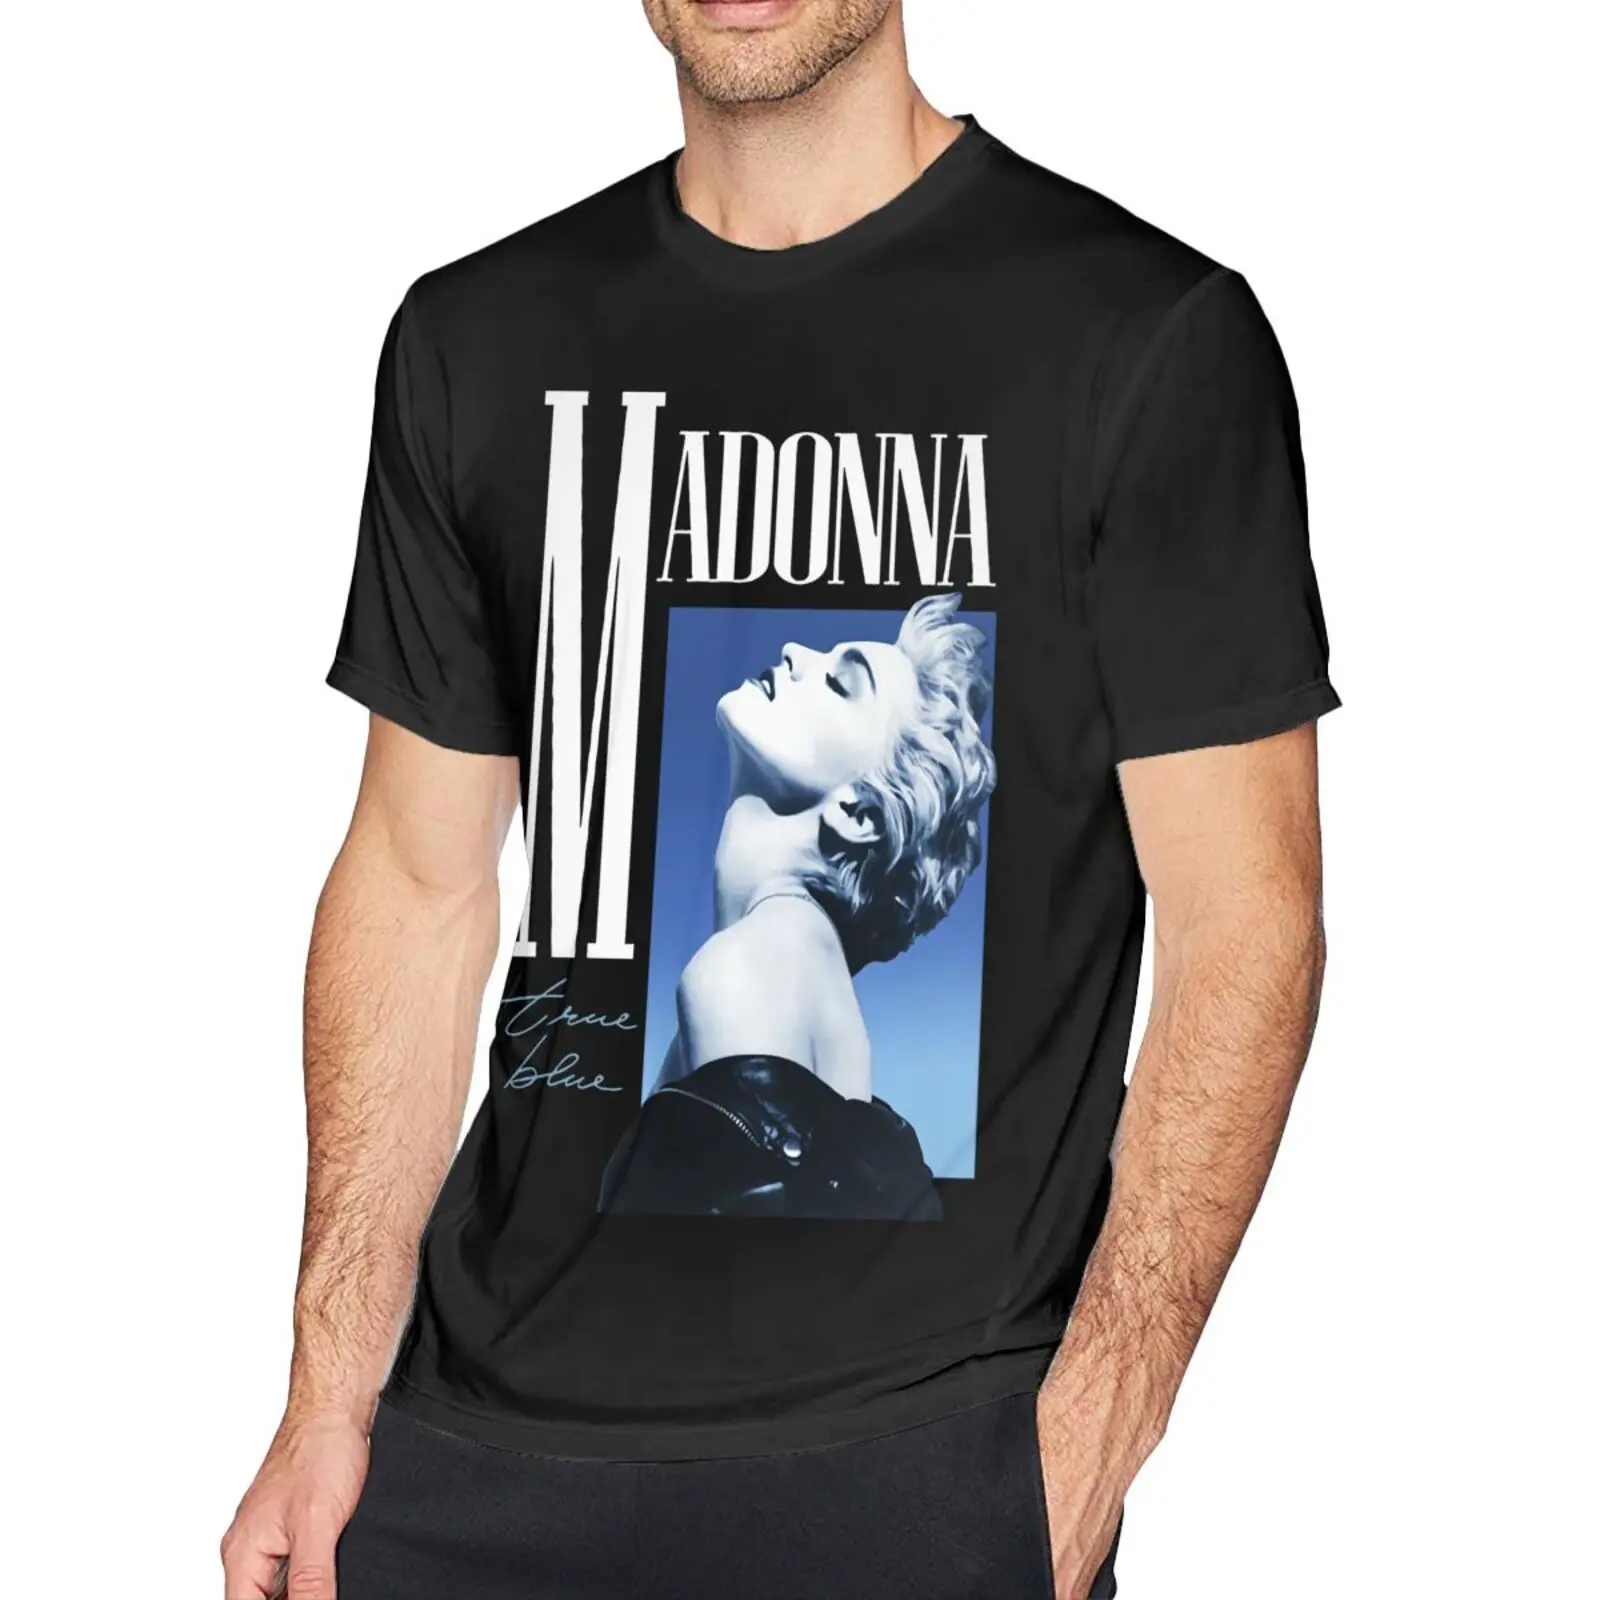 

Женская футболка с надписью Madonna, синяя футболка большого размера с принтом в стиле 80-х годов, футболка в стиле Харадзюку, 4277